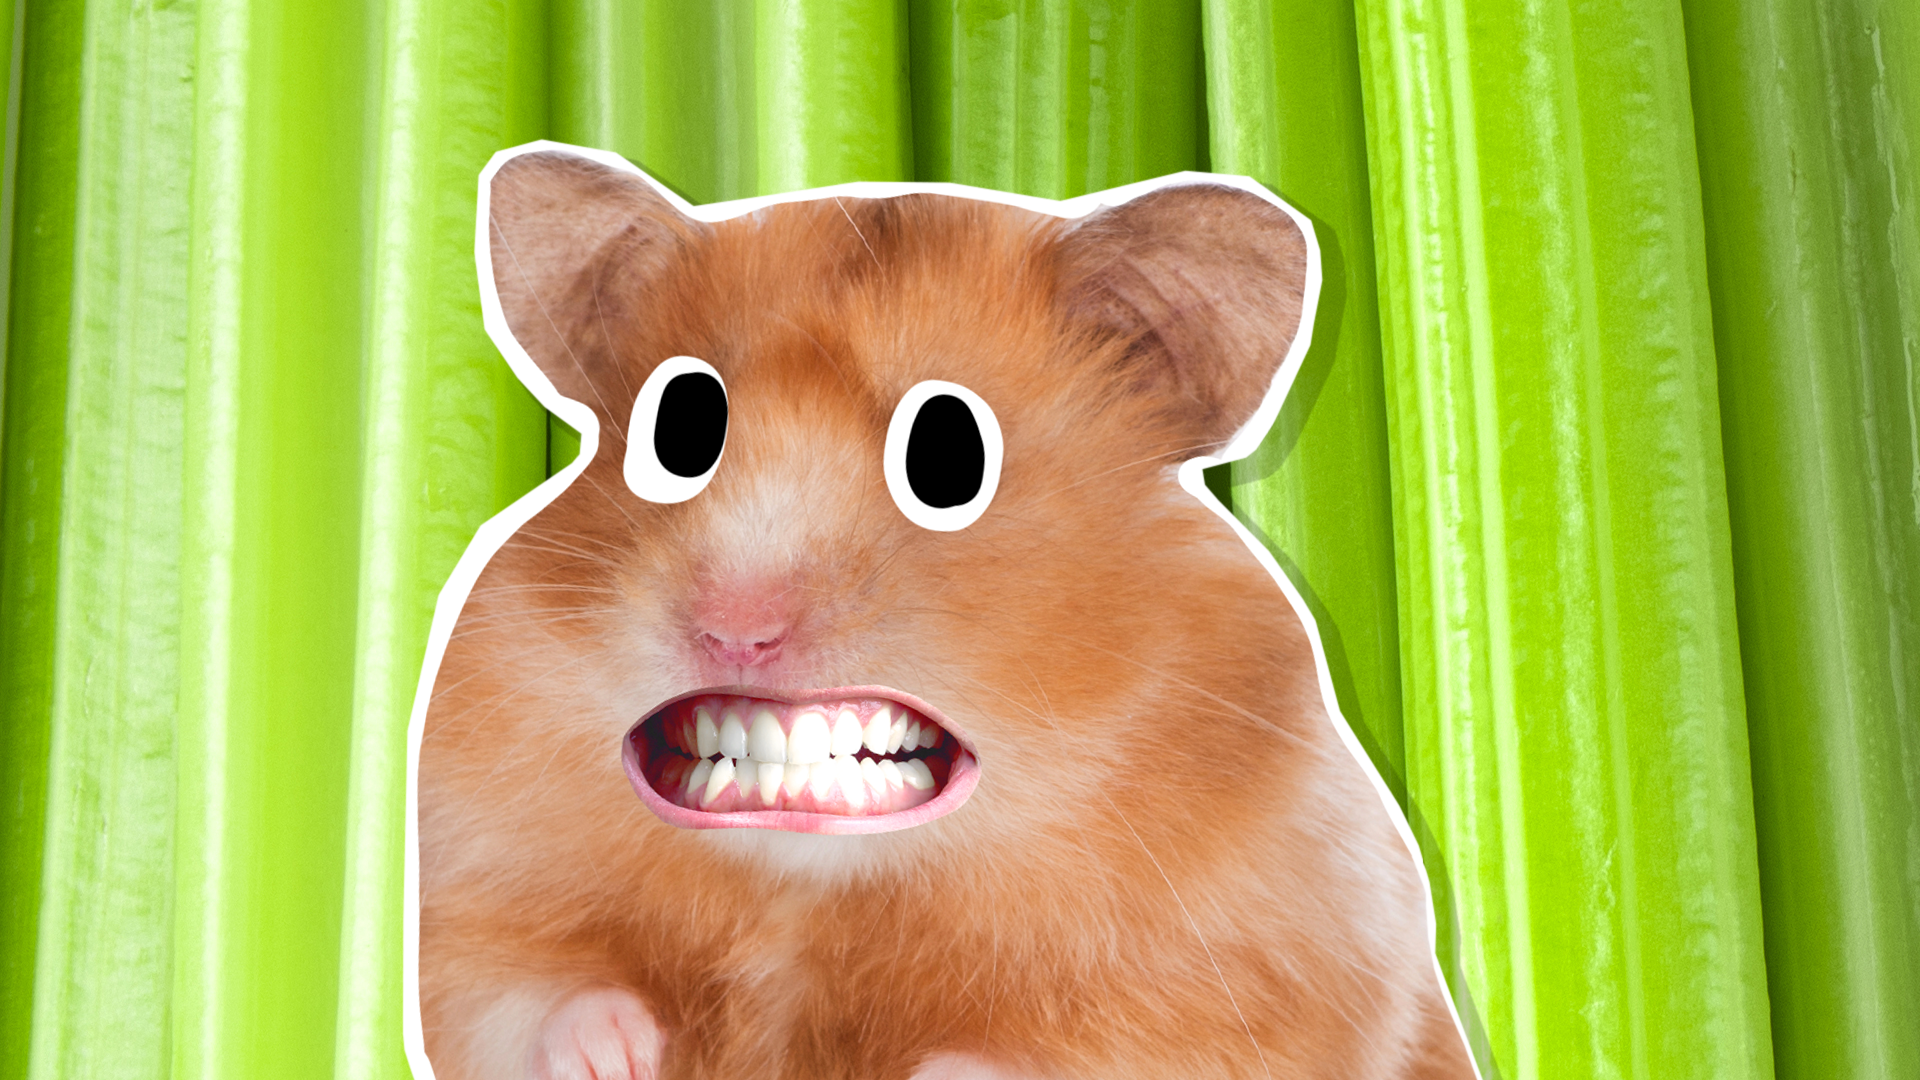 A hamster looking awkward